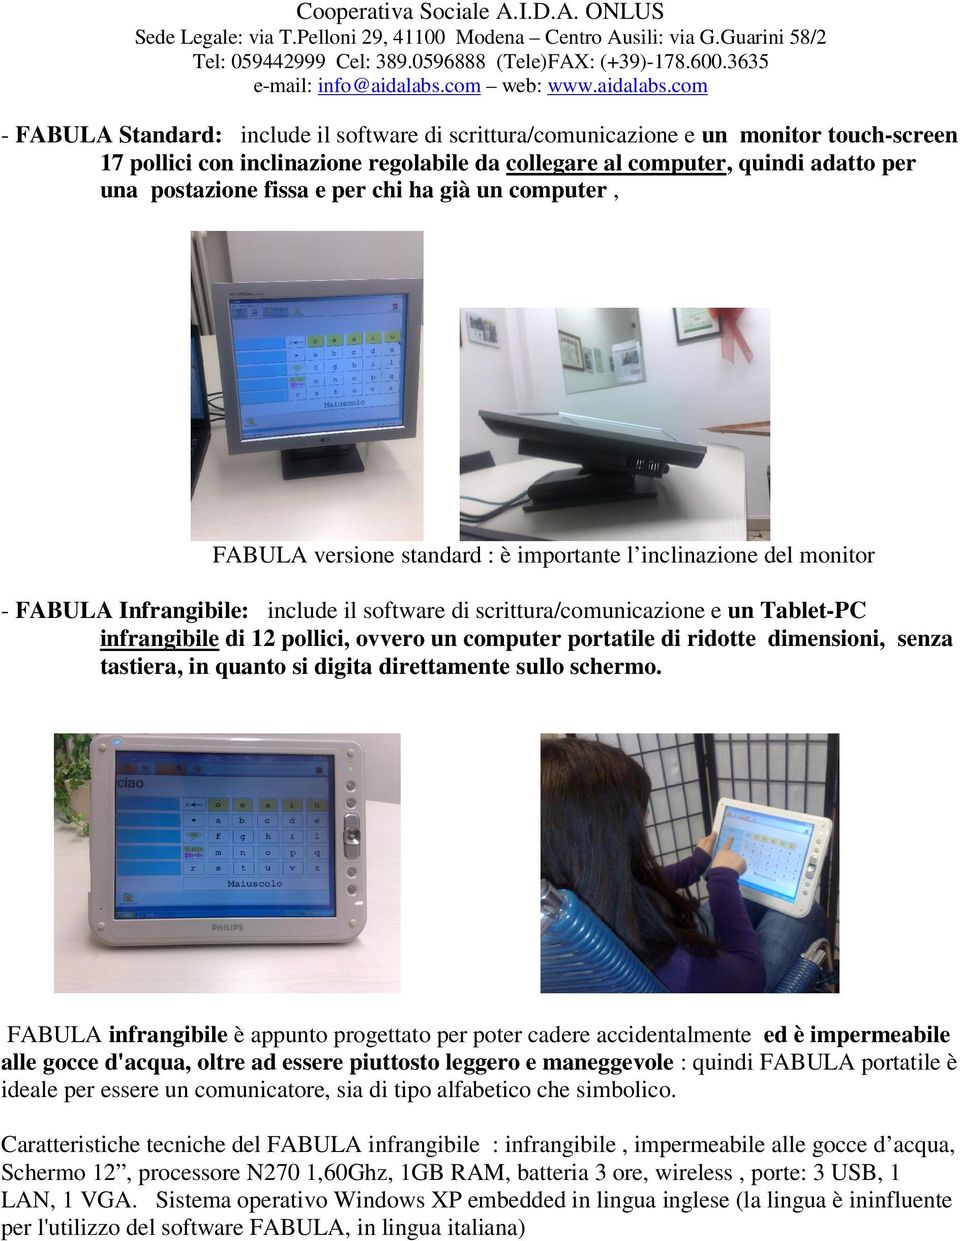 ONLUS - FABULA Standard: include il software di scrittura/comunicazione e un monitor touch-screen 17 pollici con inclinazione regolabile da collegare al computer, quindi adatto per una postazione